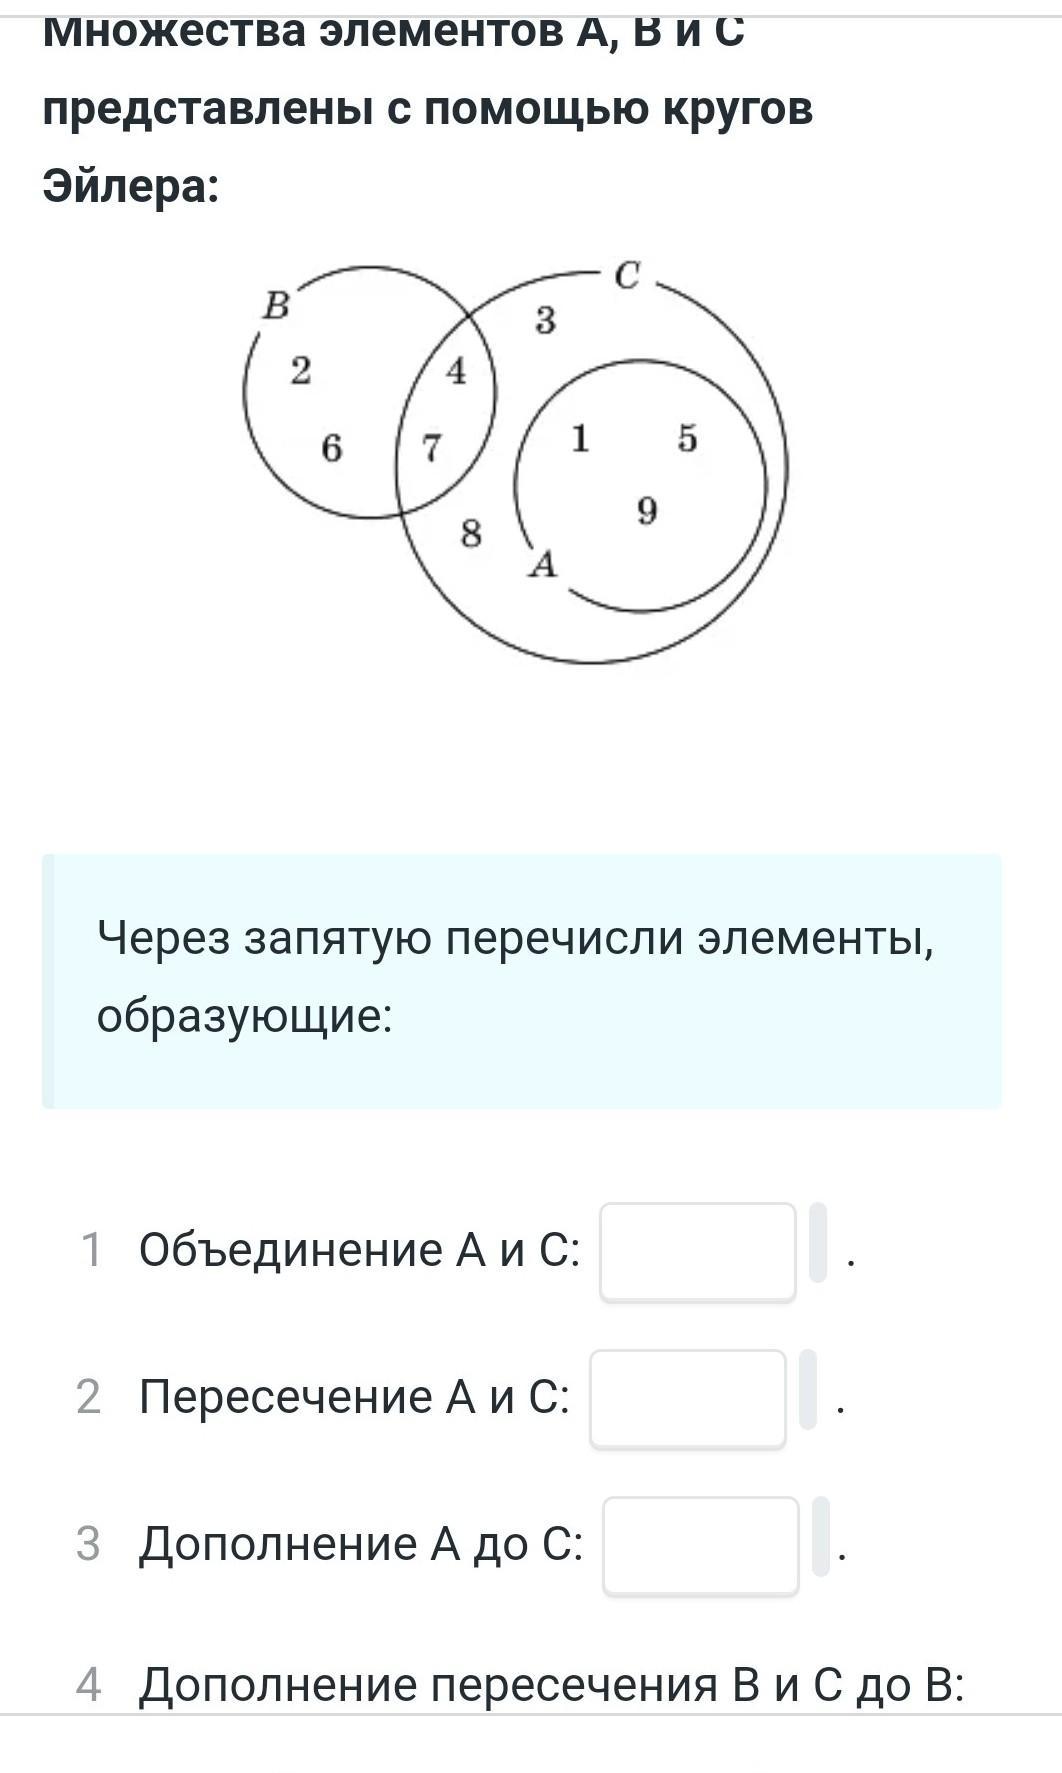 Множество элементы множества изображение множеств. Элементы множества круги Эйлера. Множества с помощью кругов Эйлера. A B C круги Эйлера. (A/C) /(B/C) кружки Эйлера.